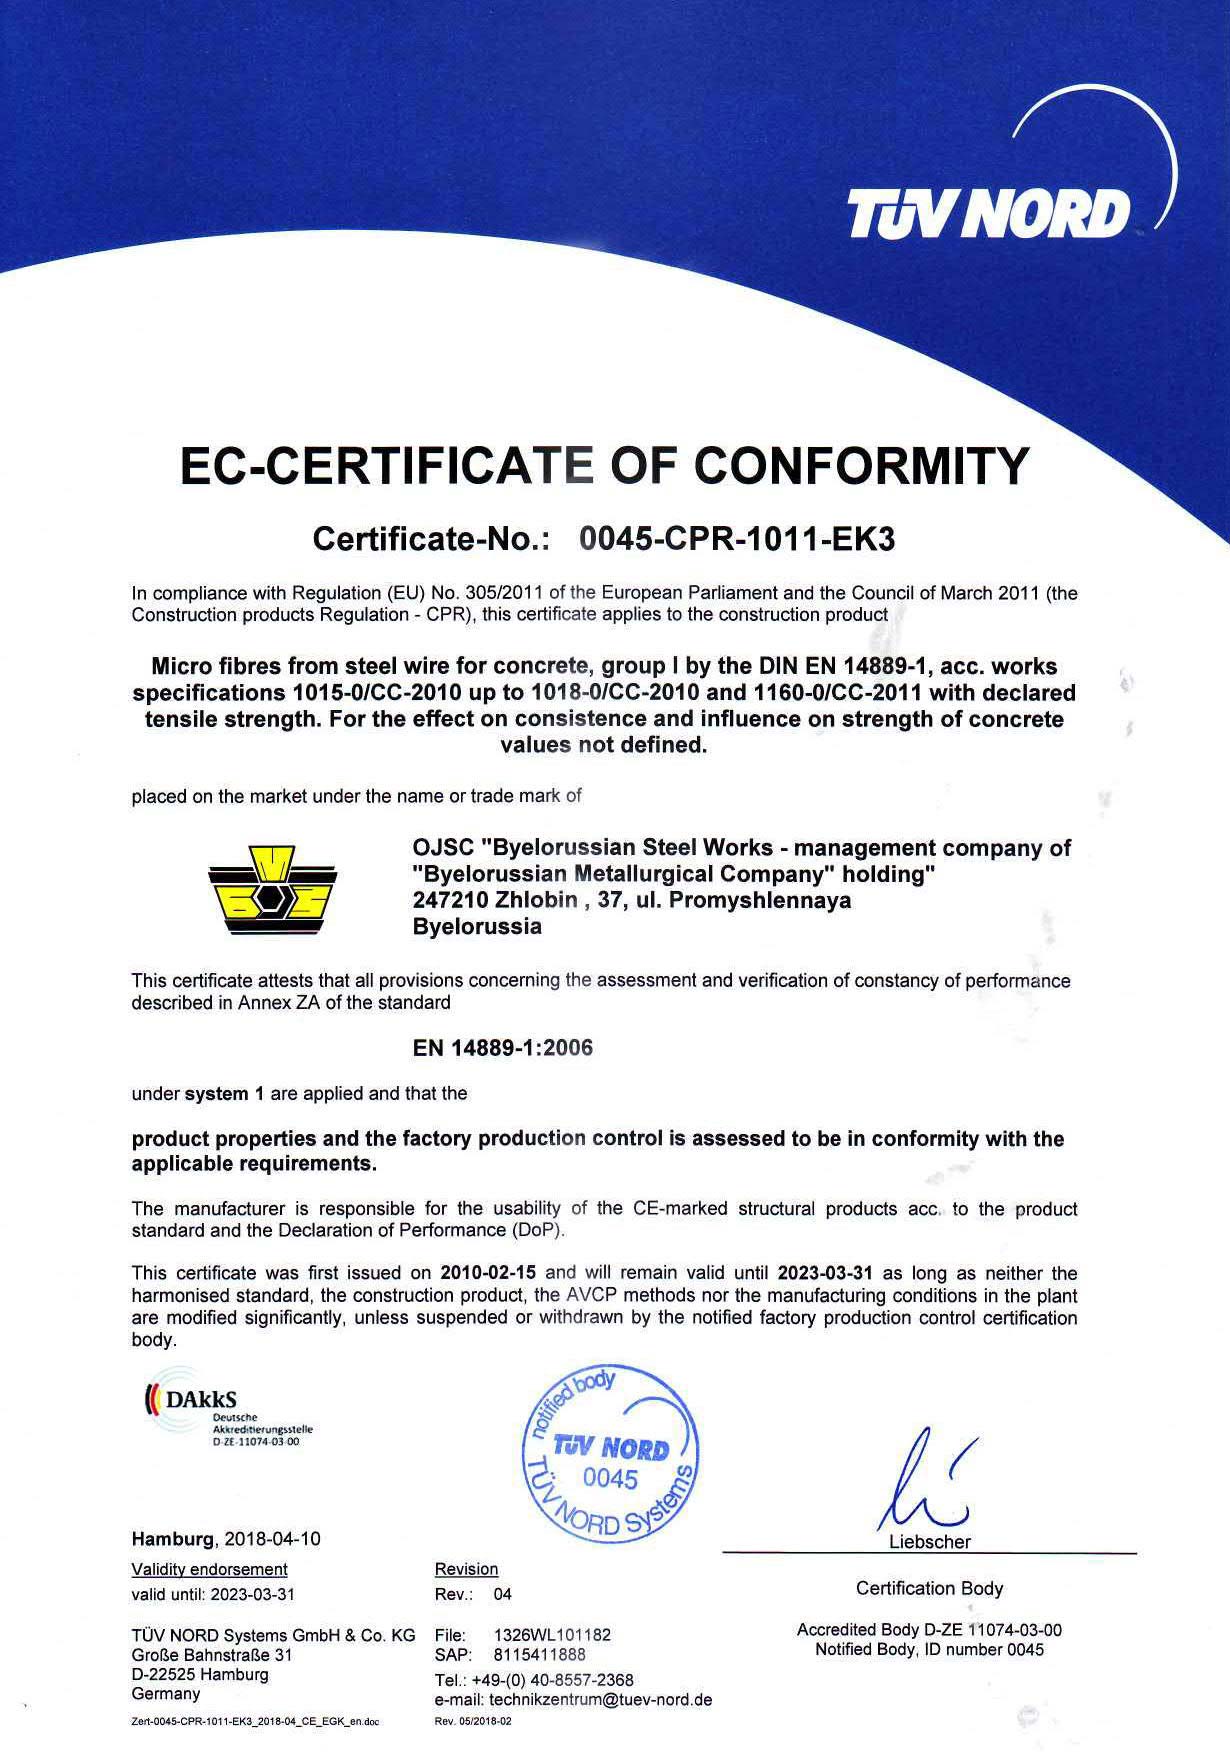 Cертификат TUV NORD (Германия) № 0045-CPR-1011-EK2 на производство стальной волновой фибры для армирования бетона в соответствии с EN 14889-1:2006 и Европейским строительным регламентом 305/2011 (право нанесения СЕ маркировки) 